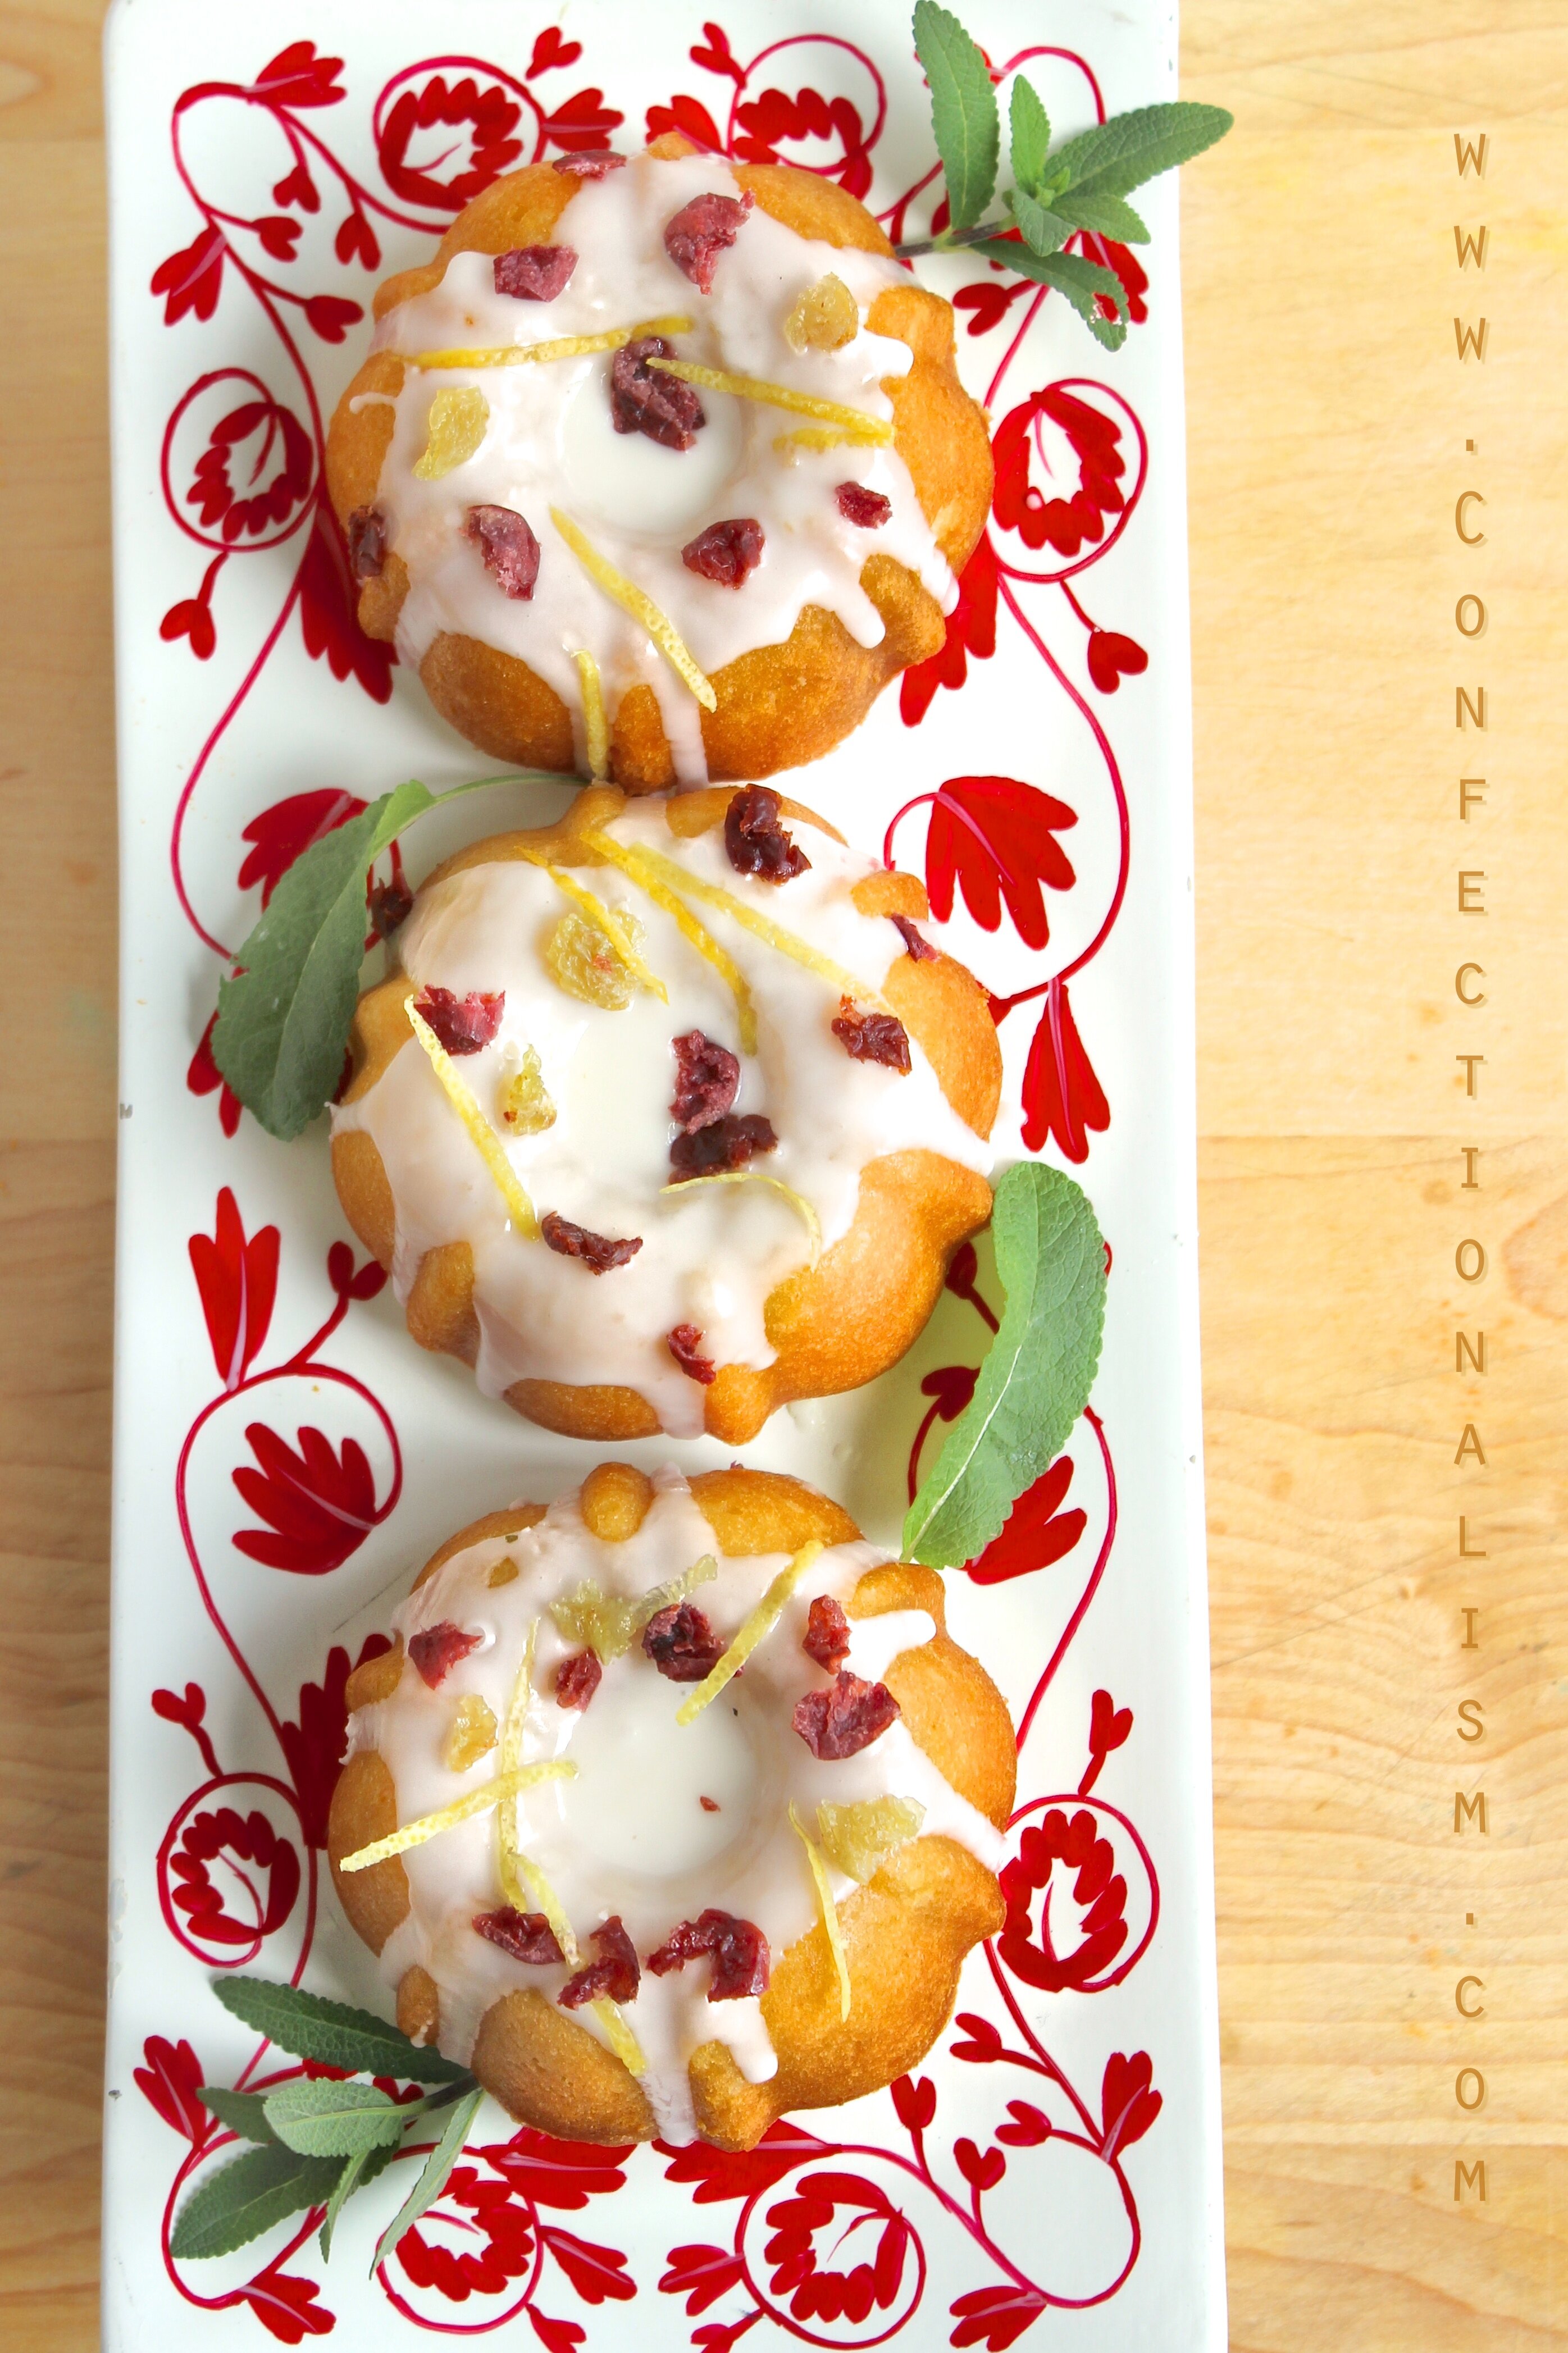 Mini Double Lemon Bundt Cakes Recipe Confectionalism.com